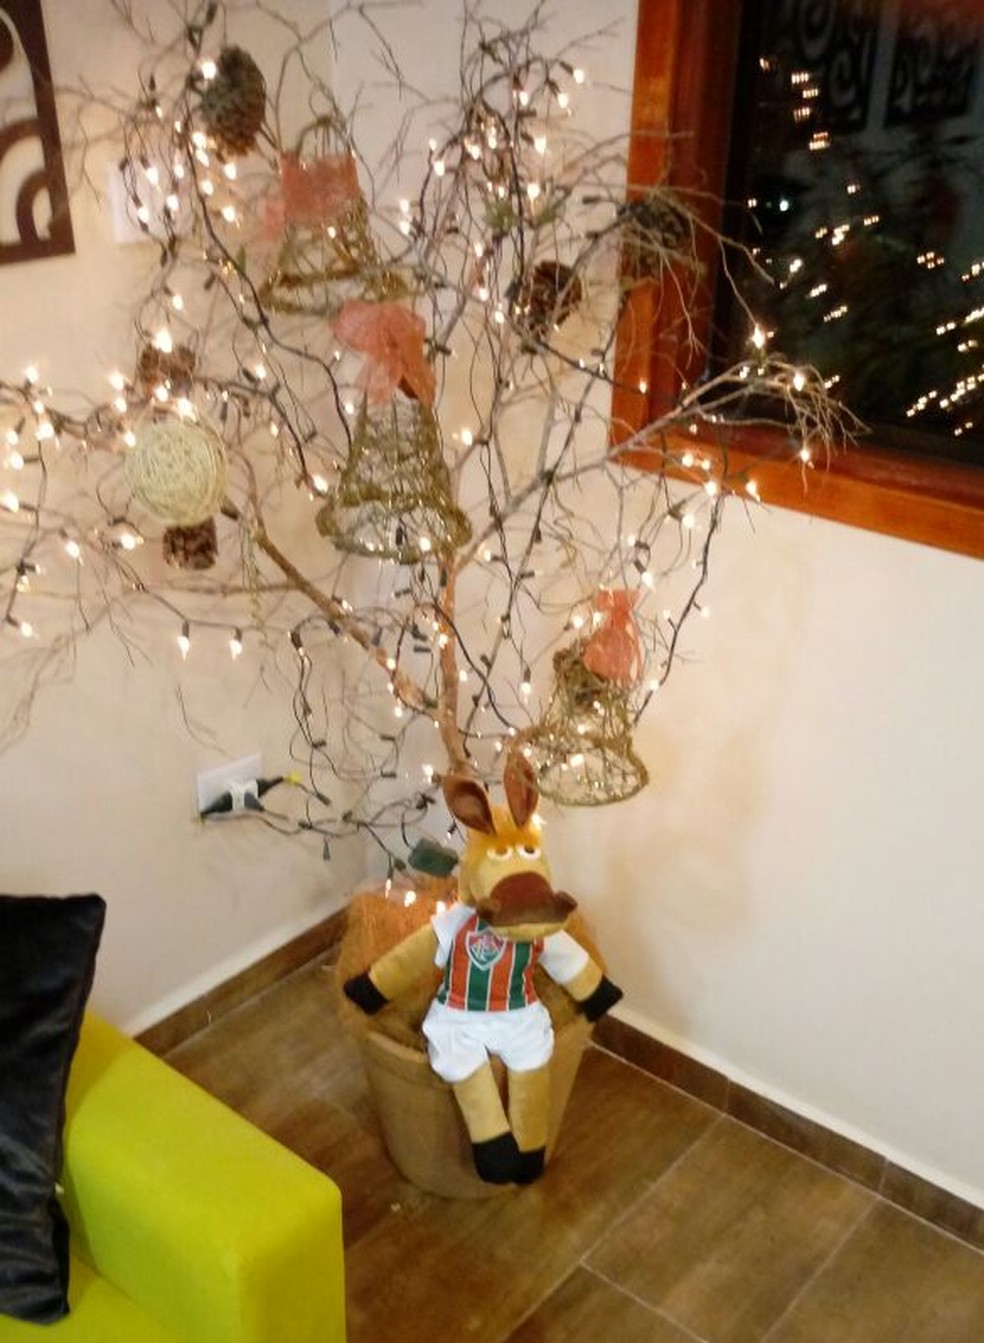 Star Wars, balões, instrumentos.... internautas abusam da criatividade nas árvores  de Natal; VEJA FOTOS | Sul de Minas | G1